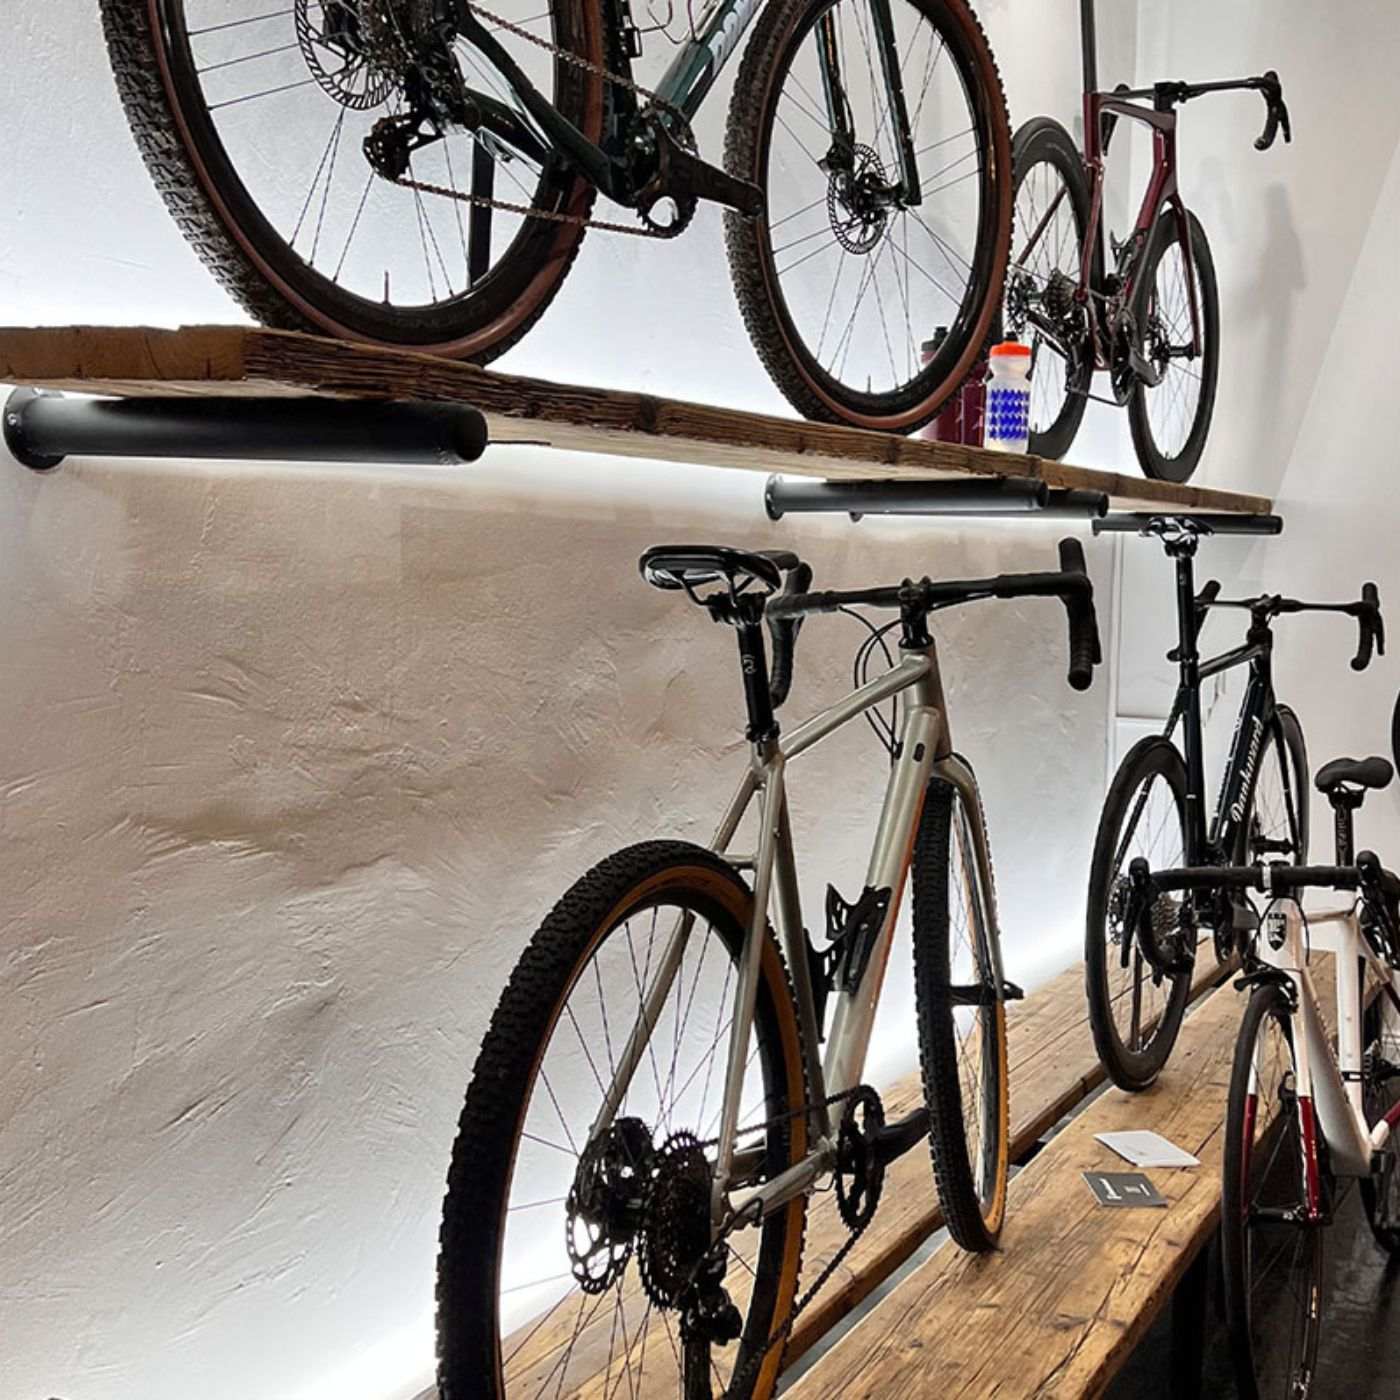 Nachhaltig und stilvoll: Unser Fahrradständer aus hochwertigem Altholz/Massivholz ist nicht nur funktional, sondern auch eine ästhetische Bereicherung. Handgefertigt und umweltfreundlich, bietet er eine ideale Verbindung von Natur und Zweckmäßigkeit für Ihr Fahrrad